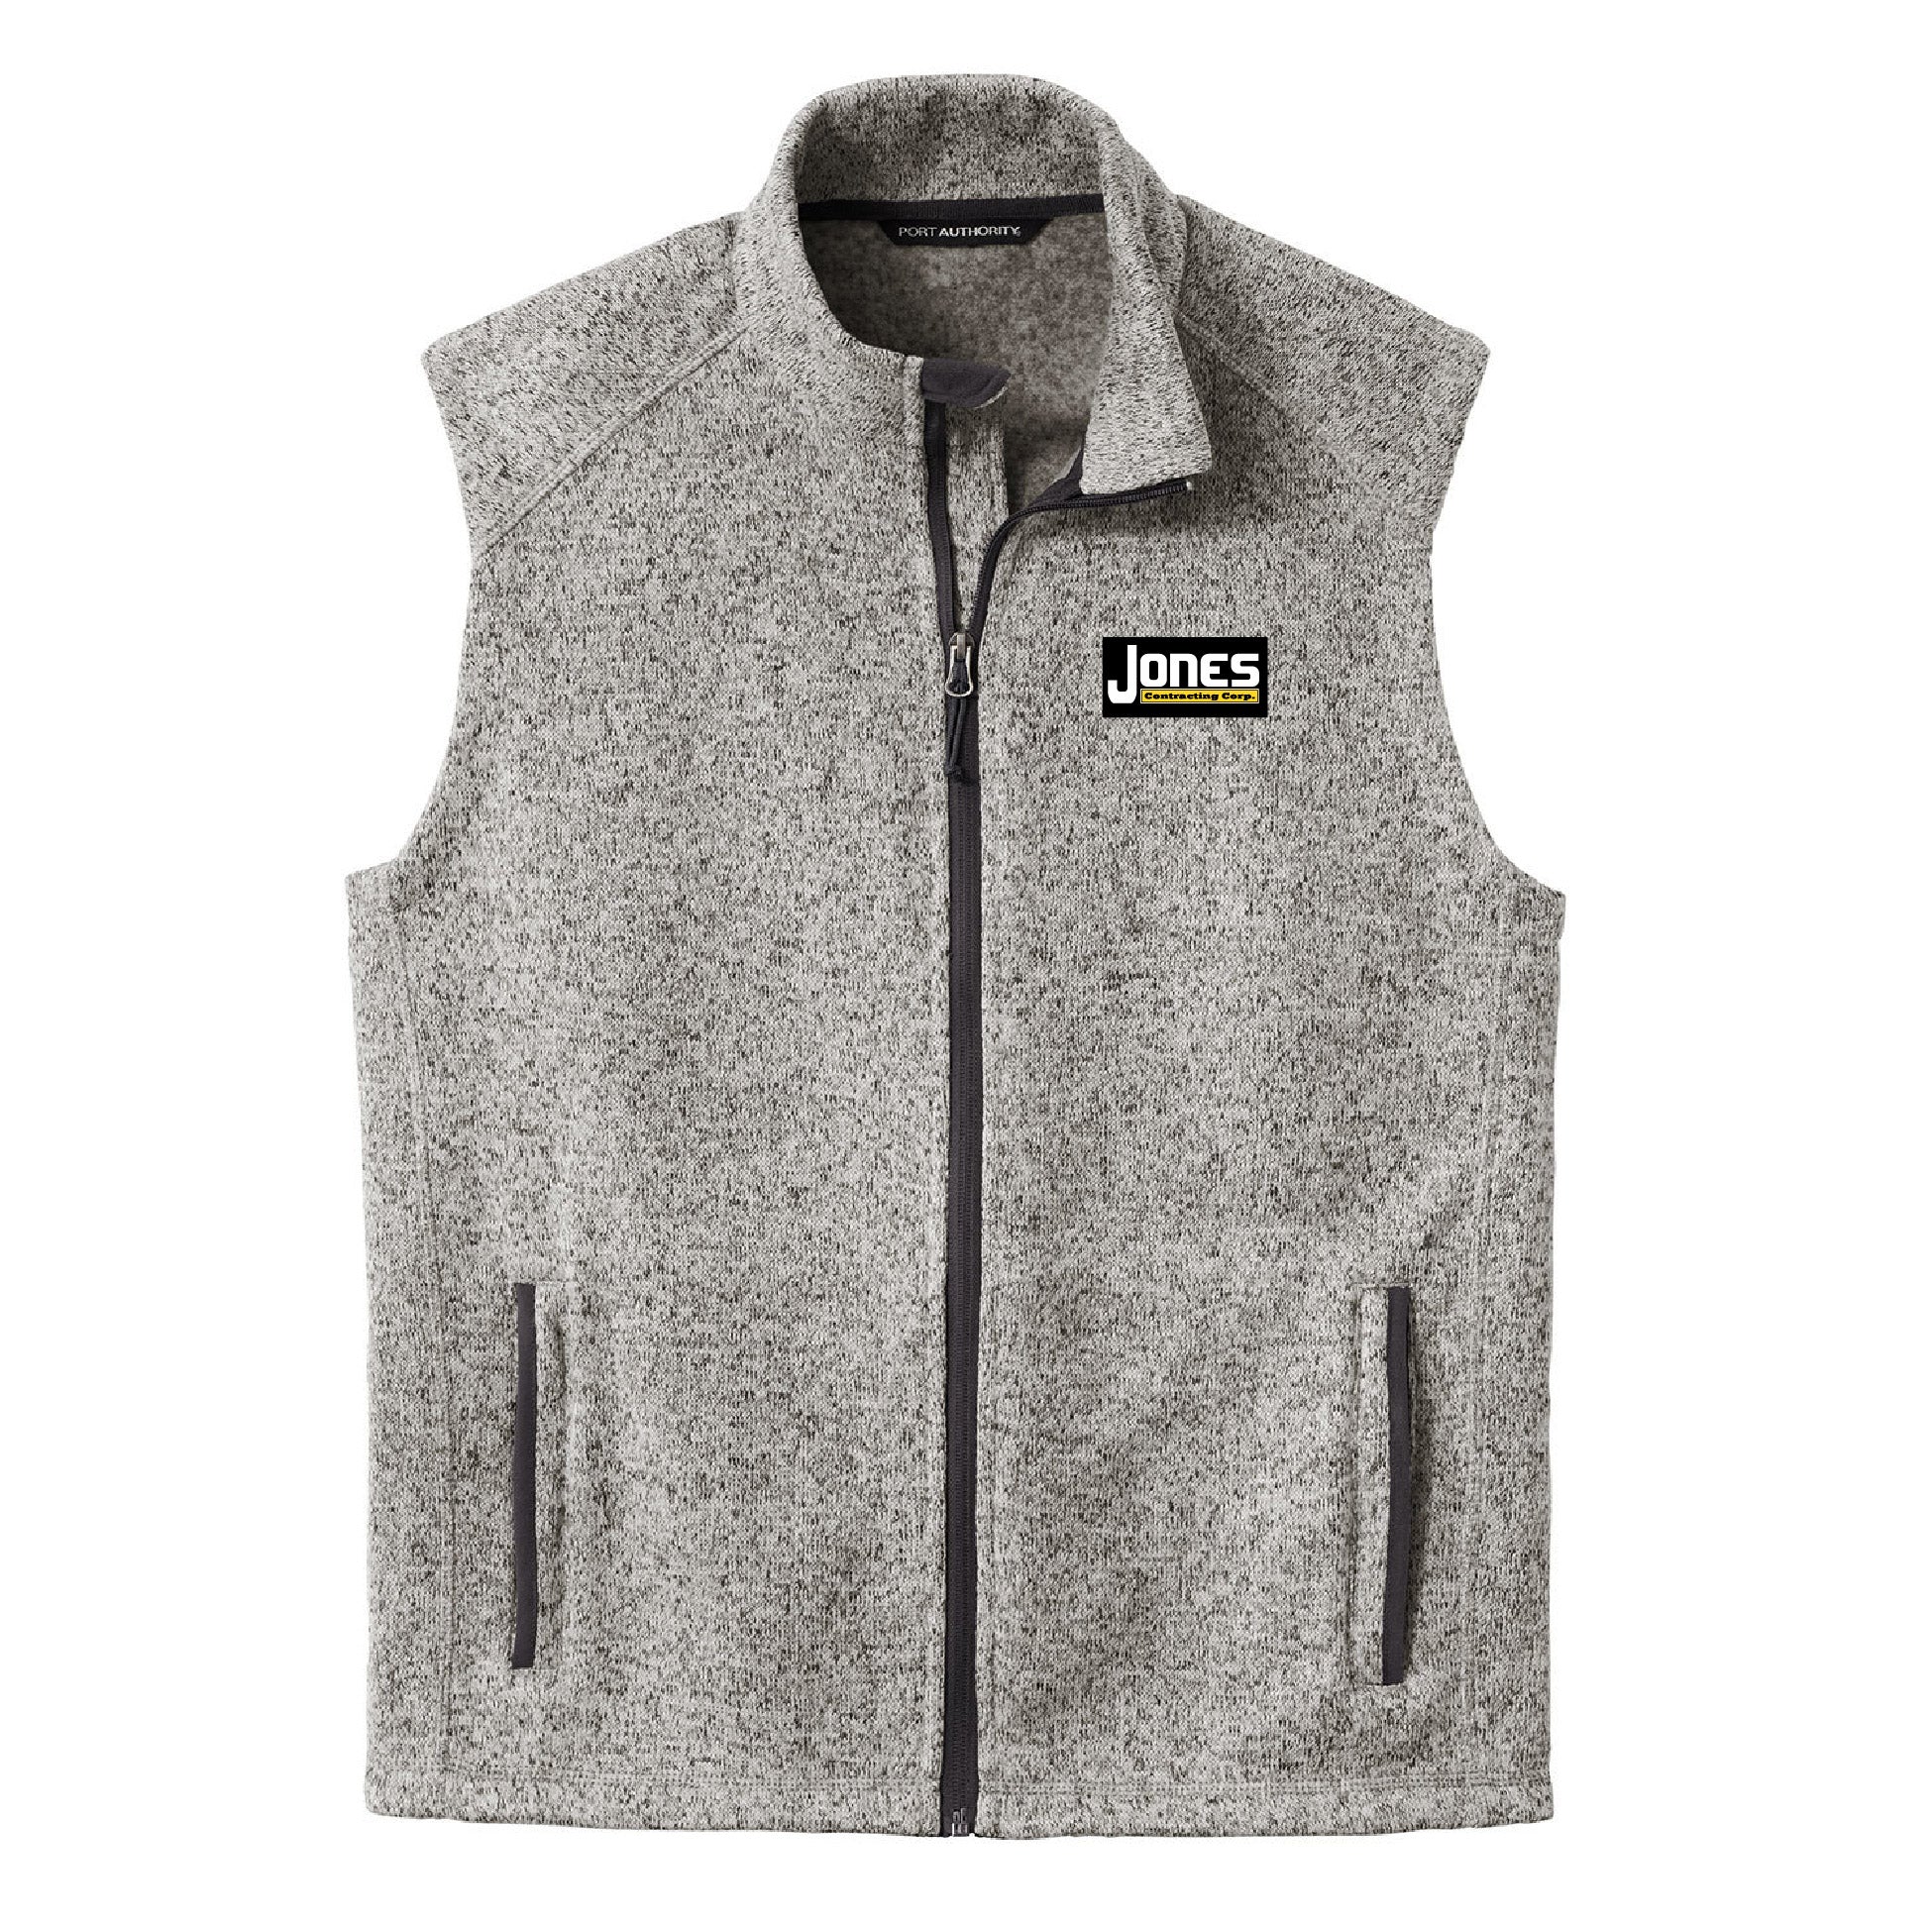 Jones Contracting Sweater Fleece Vest